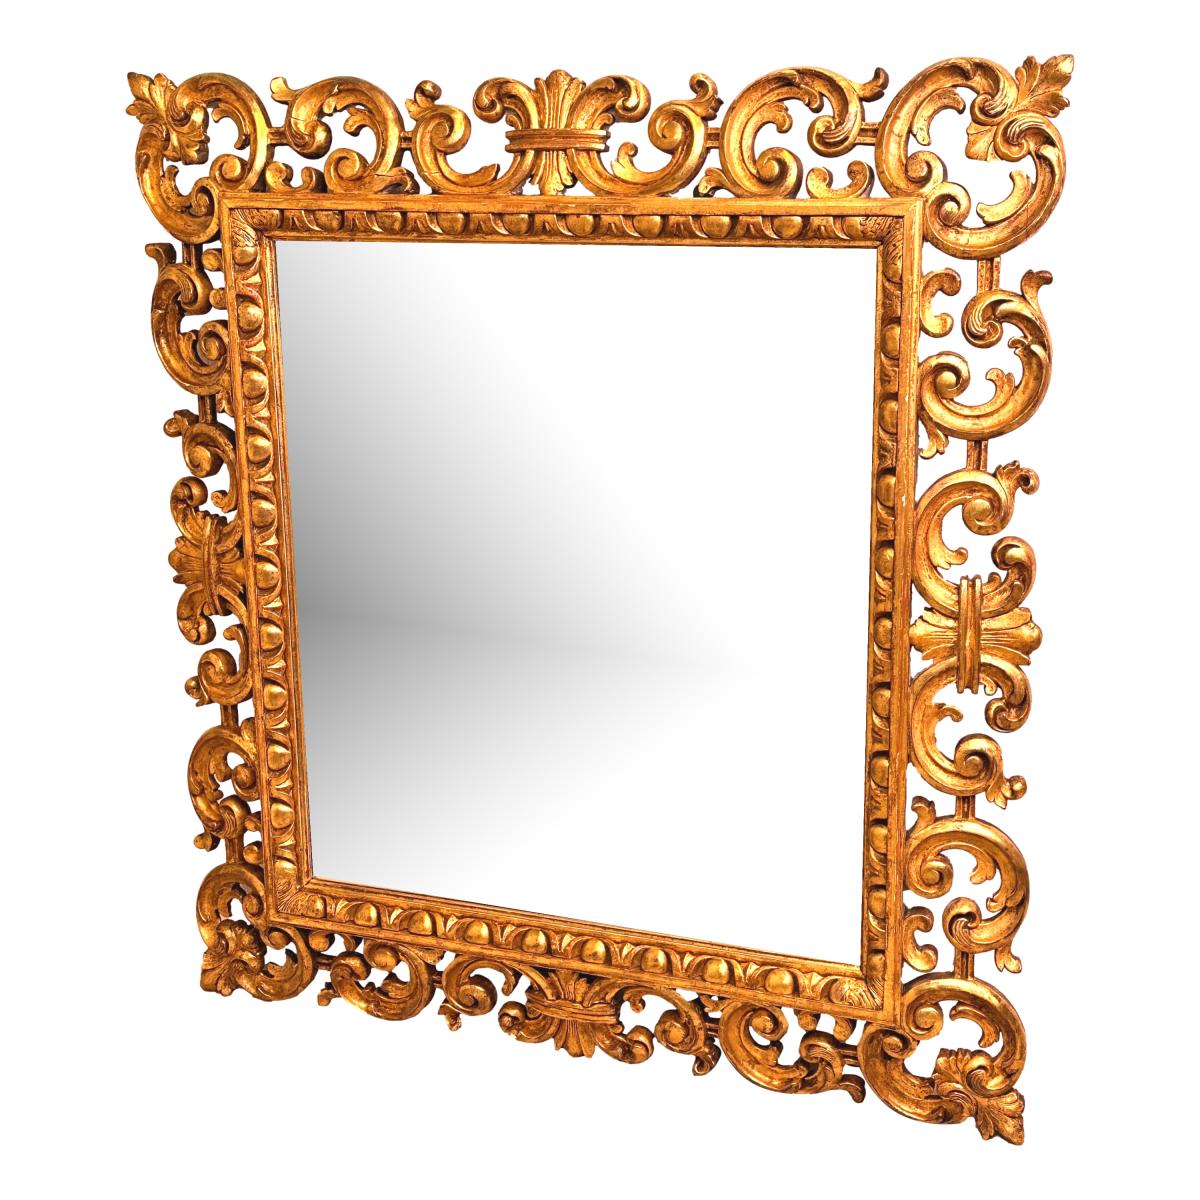 18th Century Florentine Gilt Mirror